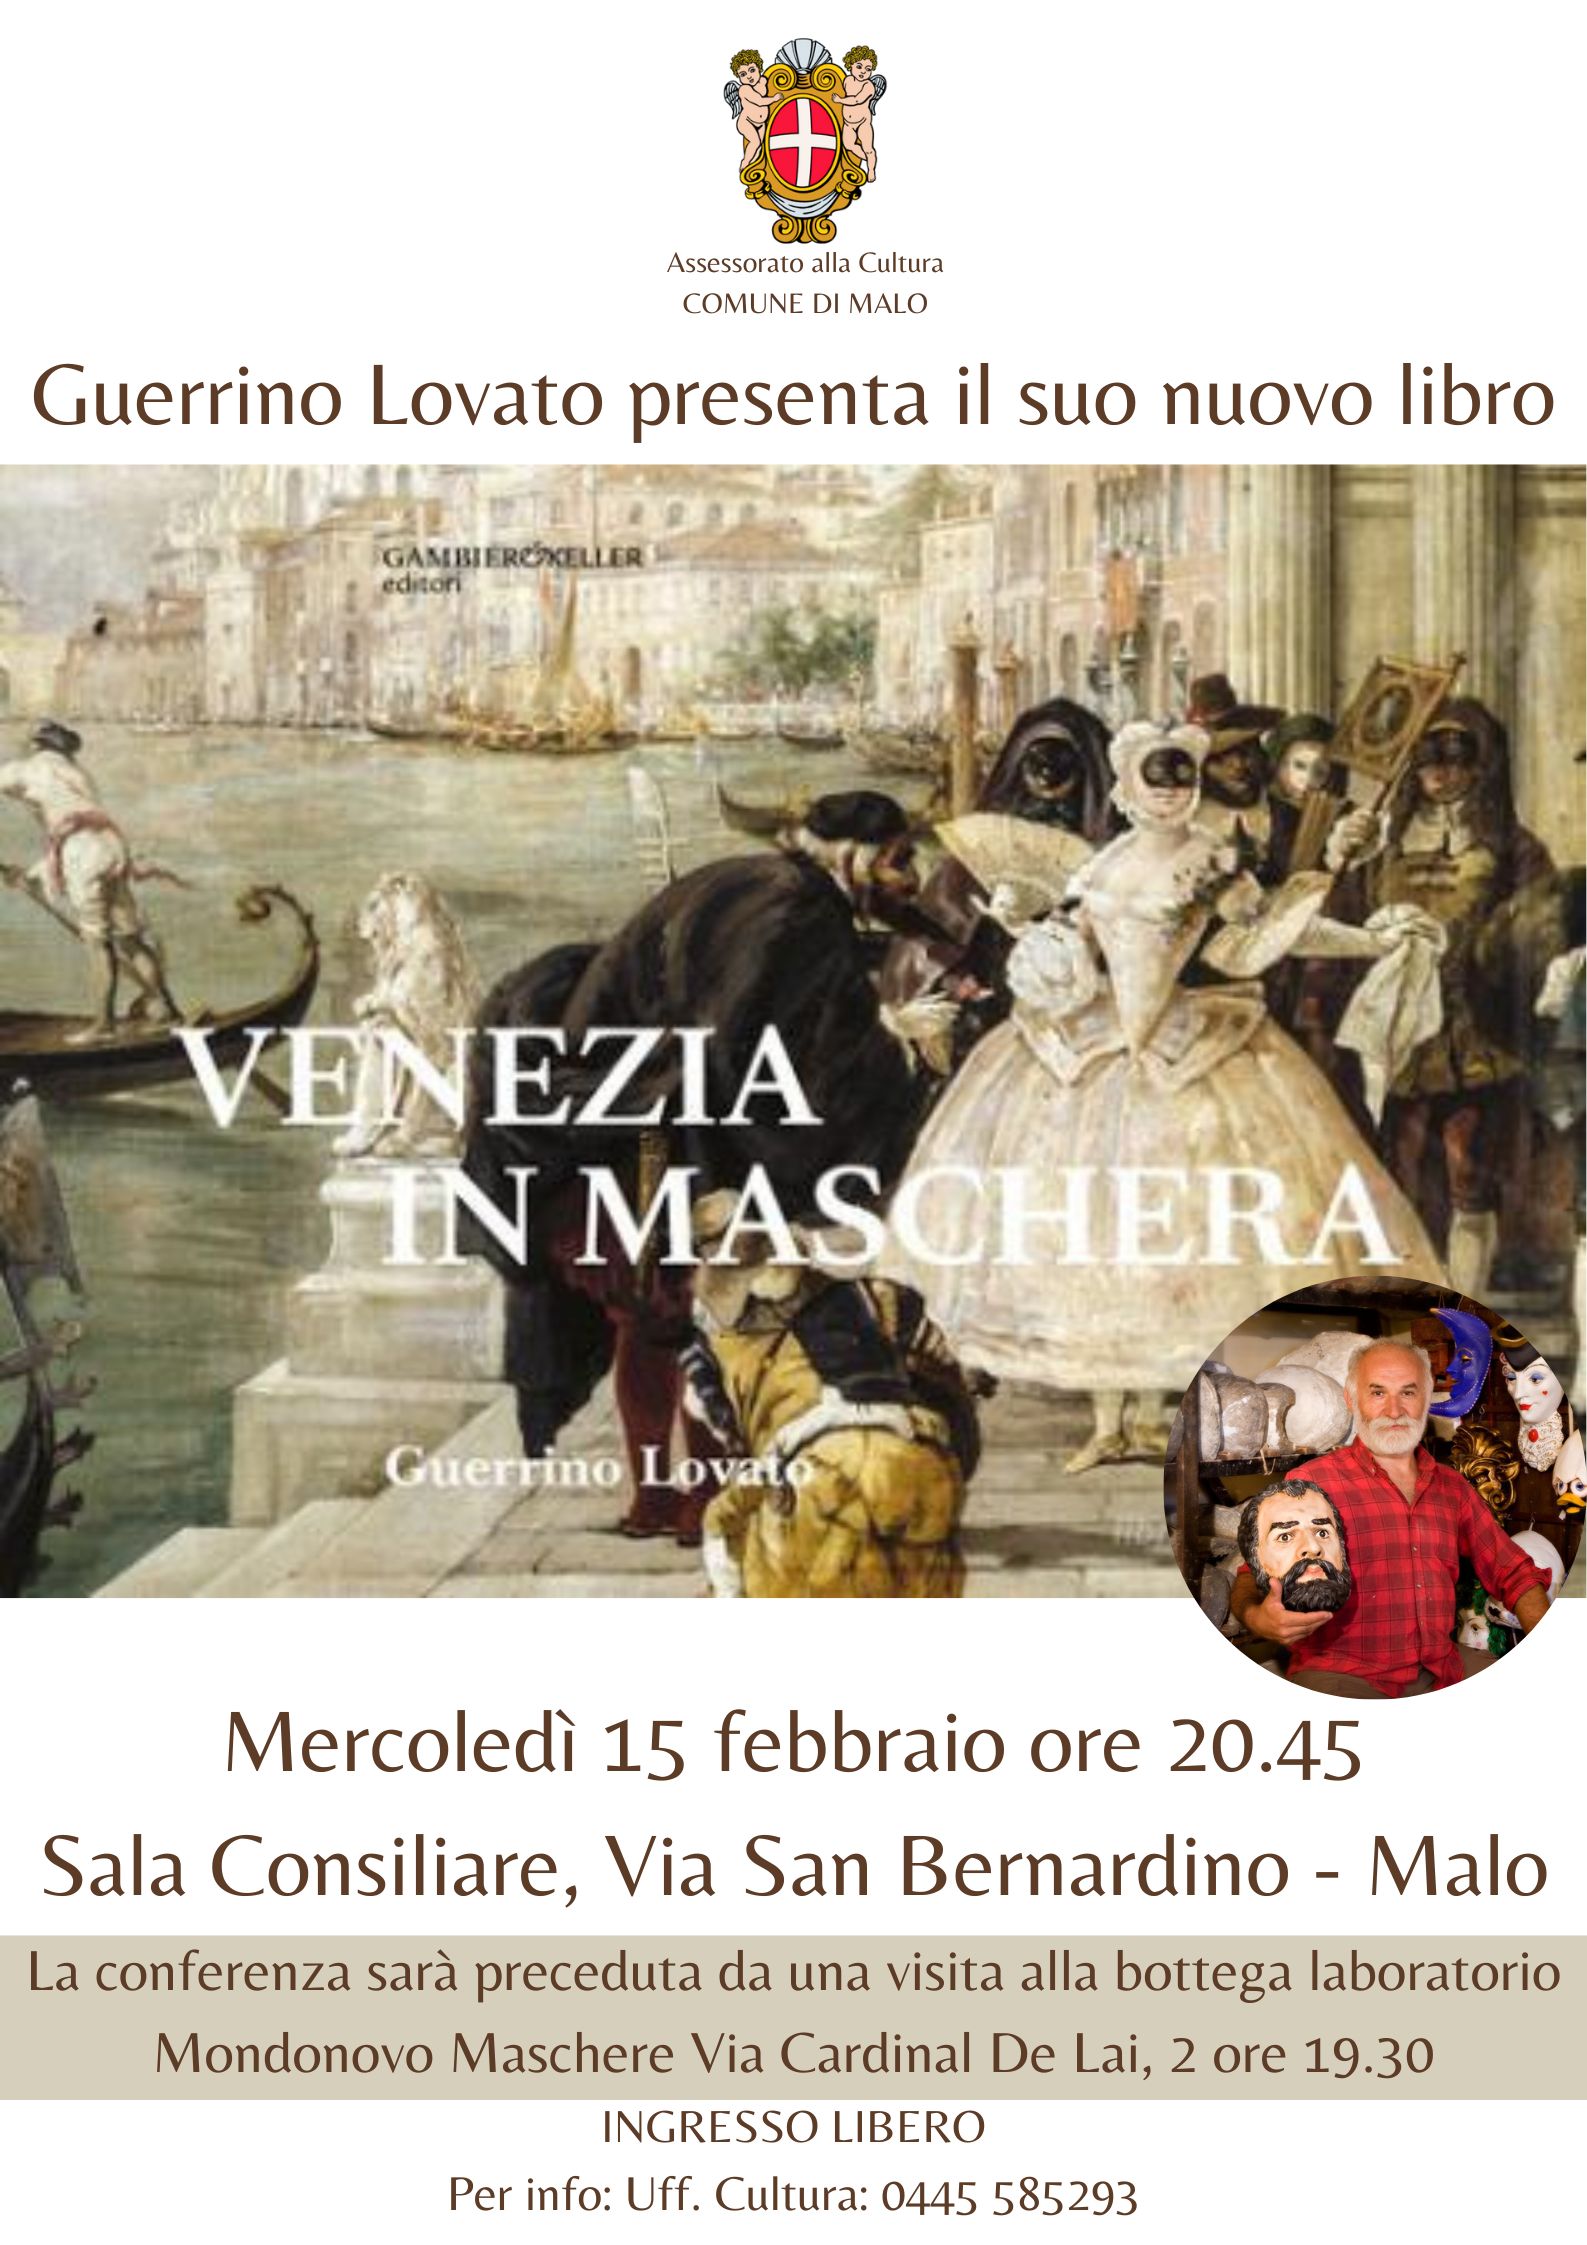 Venezia in Maschera - Guerrino Lovato presenta il suo nuovo libro.